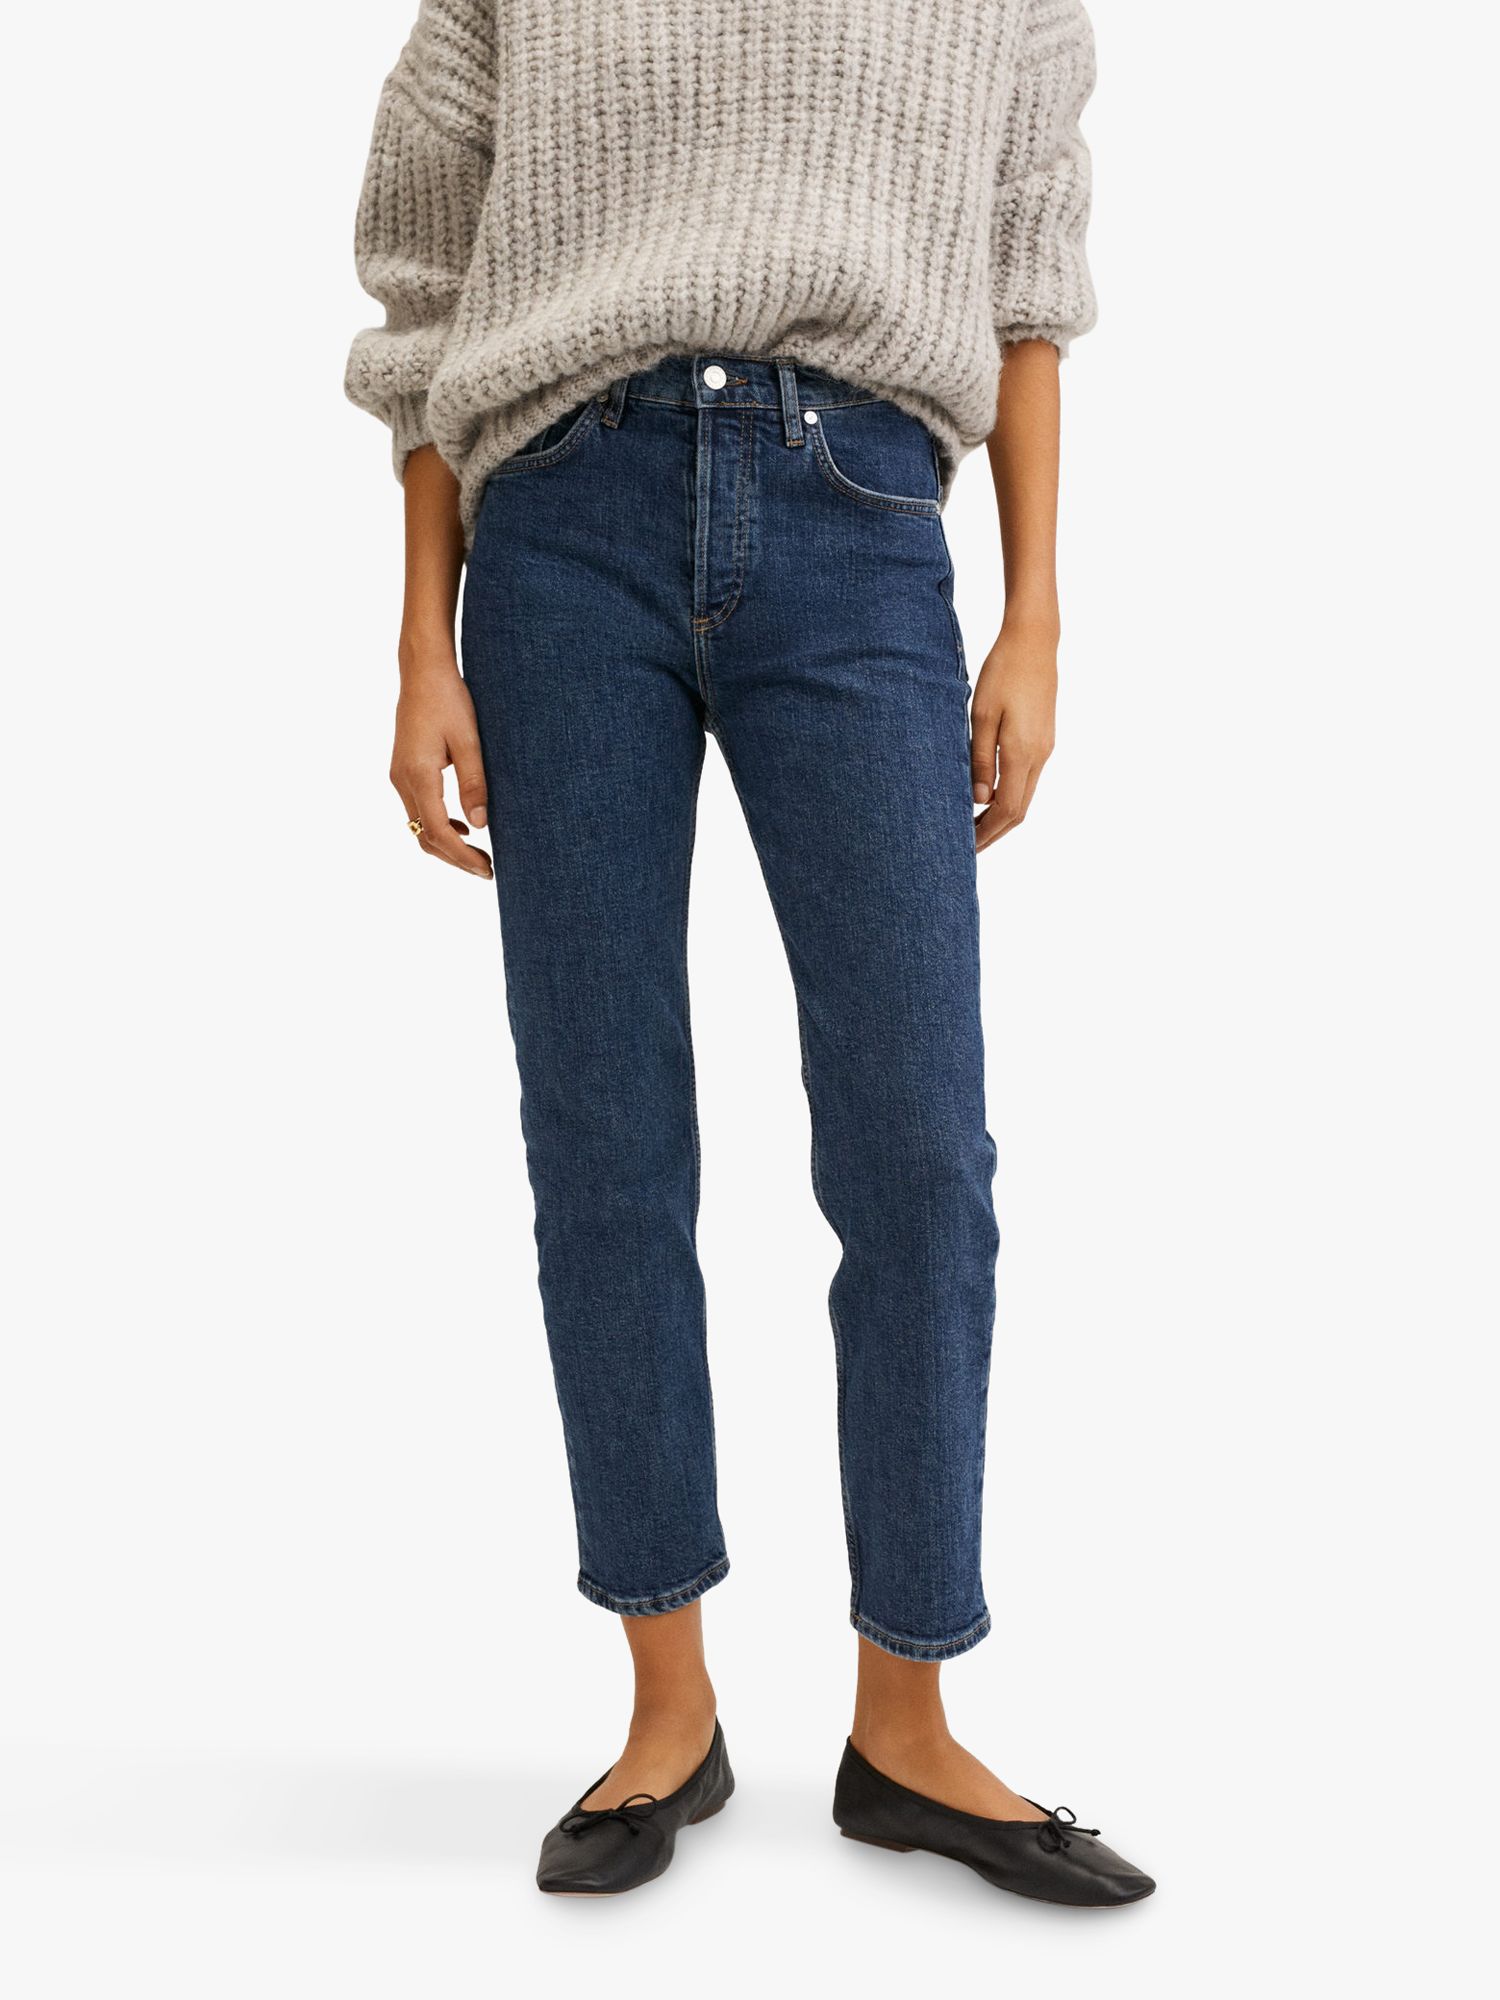 Slim Skinny Blue Denim Jeans Women's Size W26 ONLY JEANS 